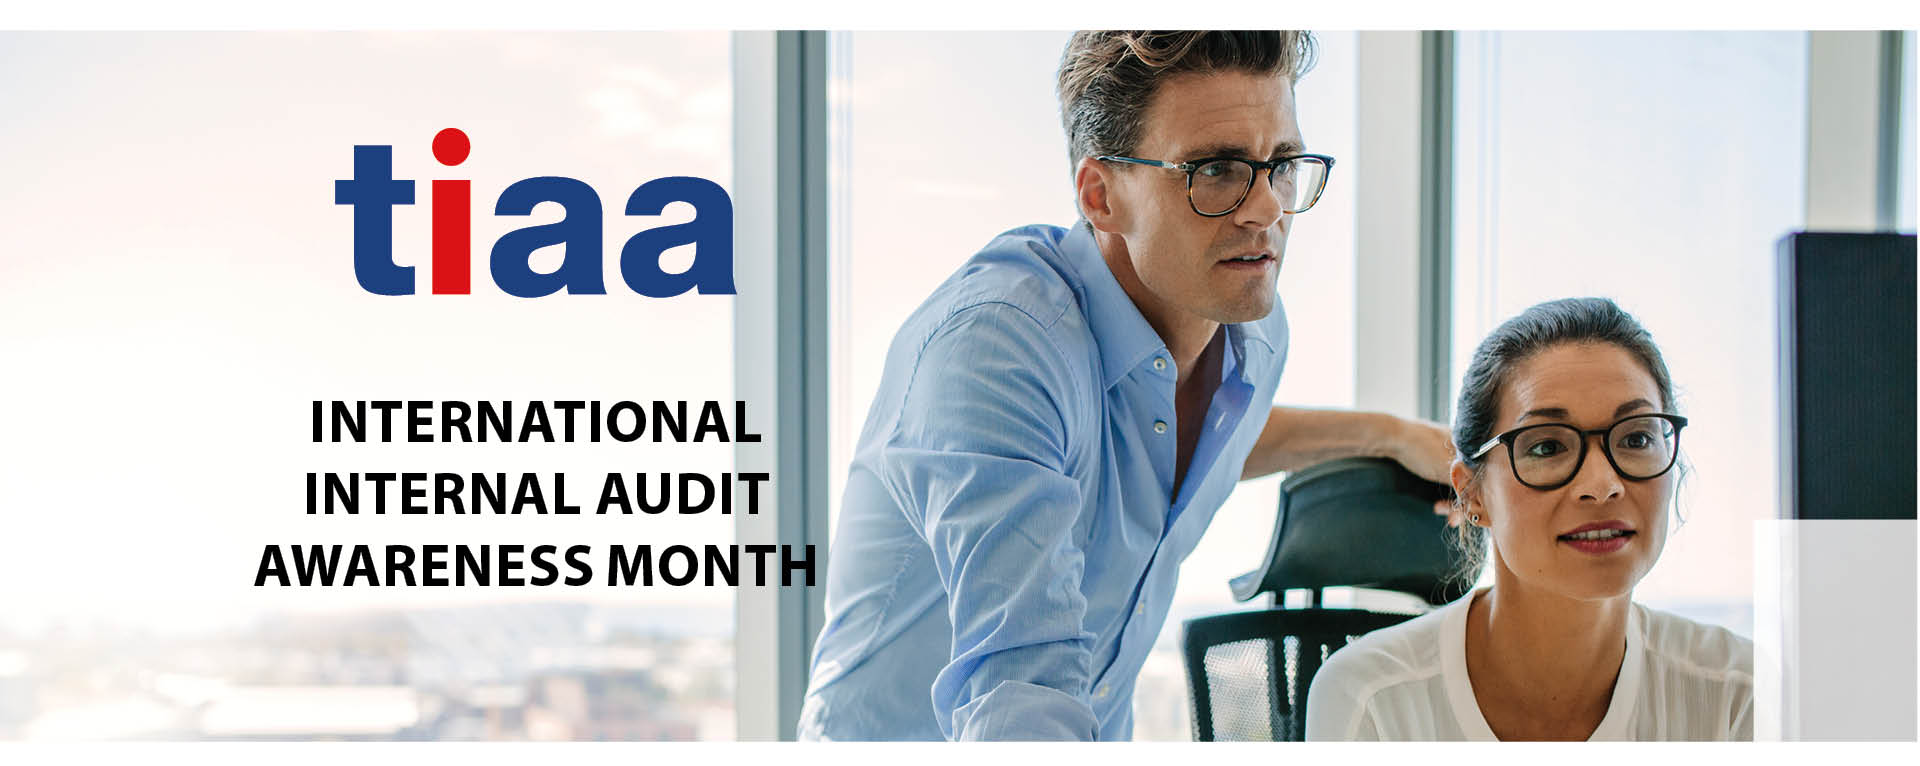 International Internal Audit Awareness Month